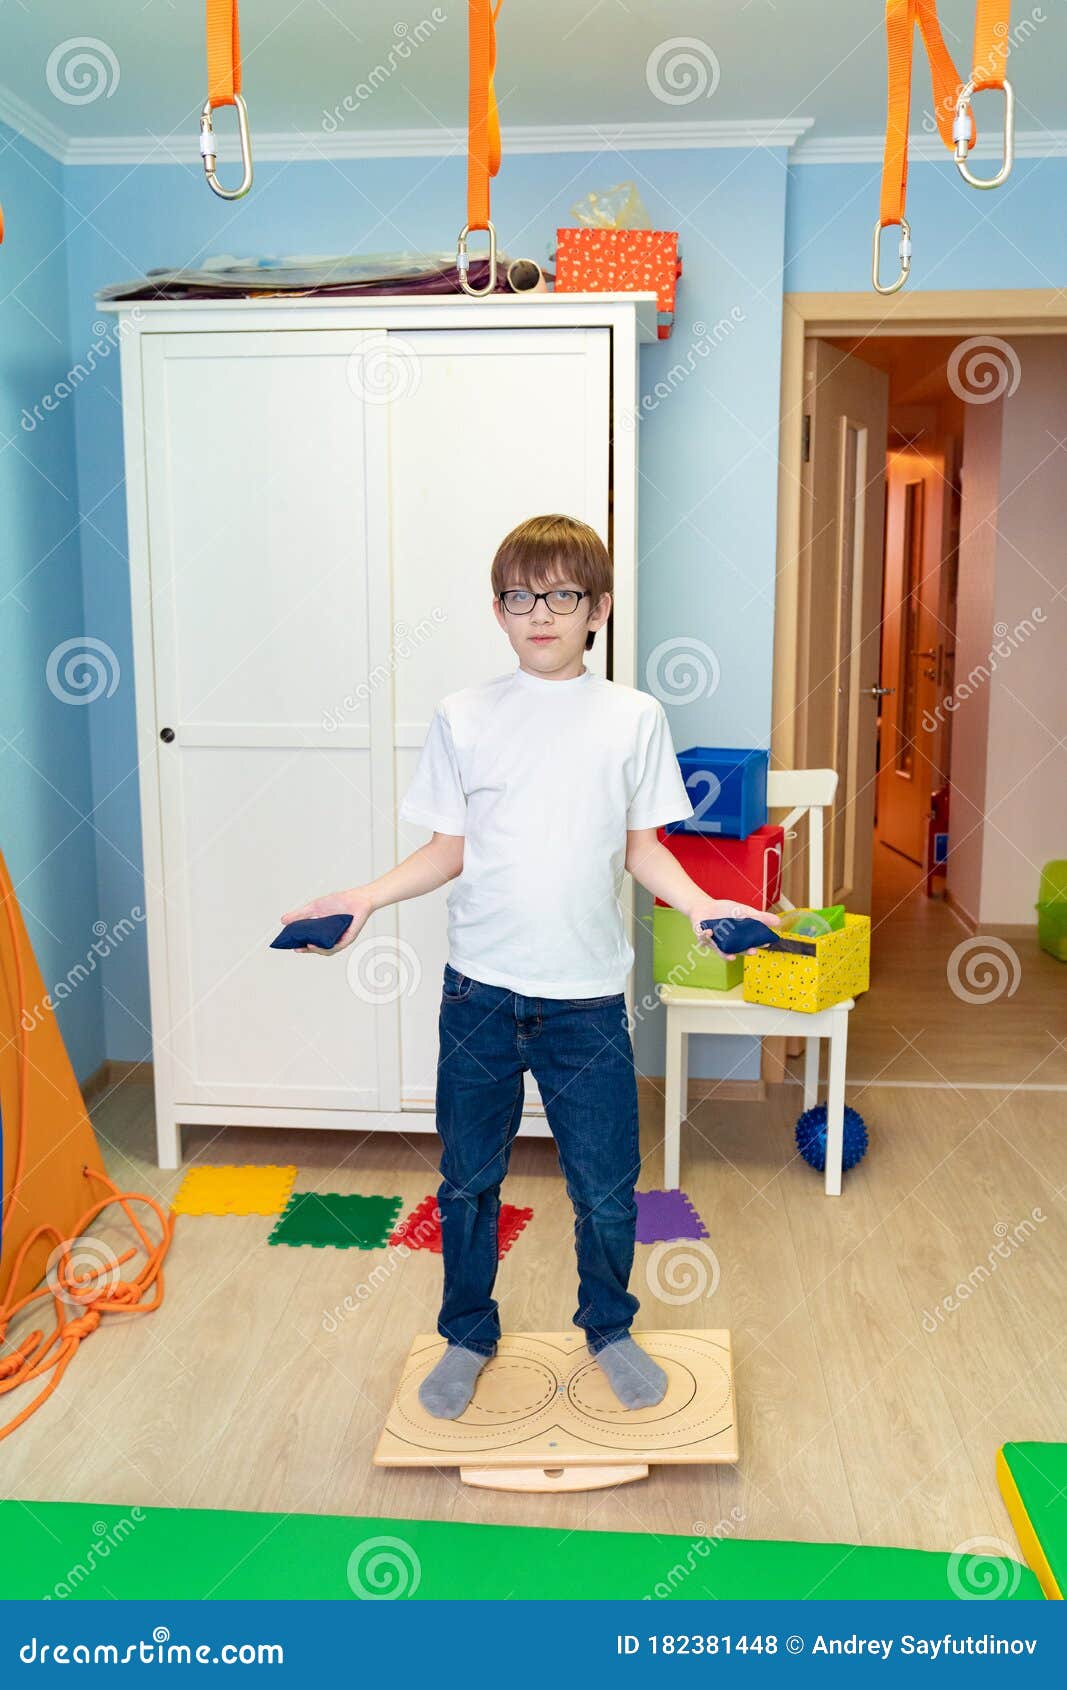 boy on balancing platform sensory integration